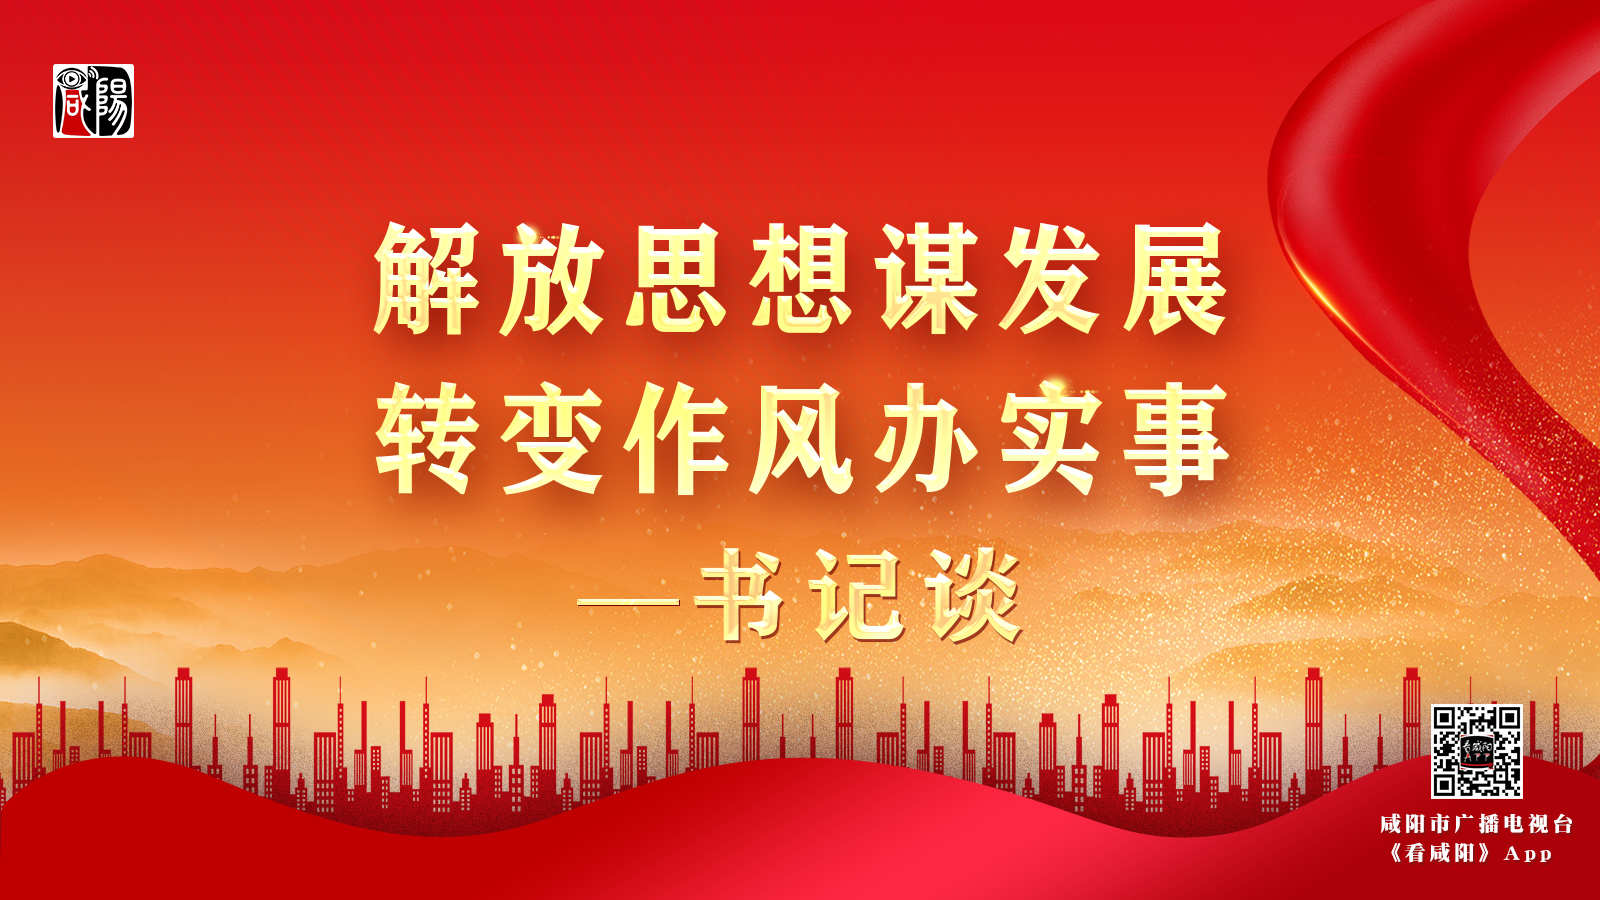 咸阳市工信局党组书记、局长李俊英：掀起解放思想热潮 助力工业经济高质量发展